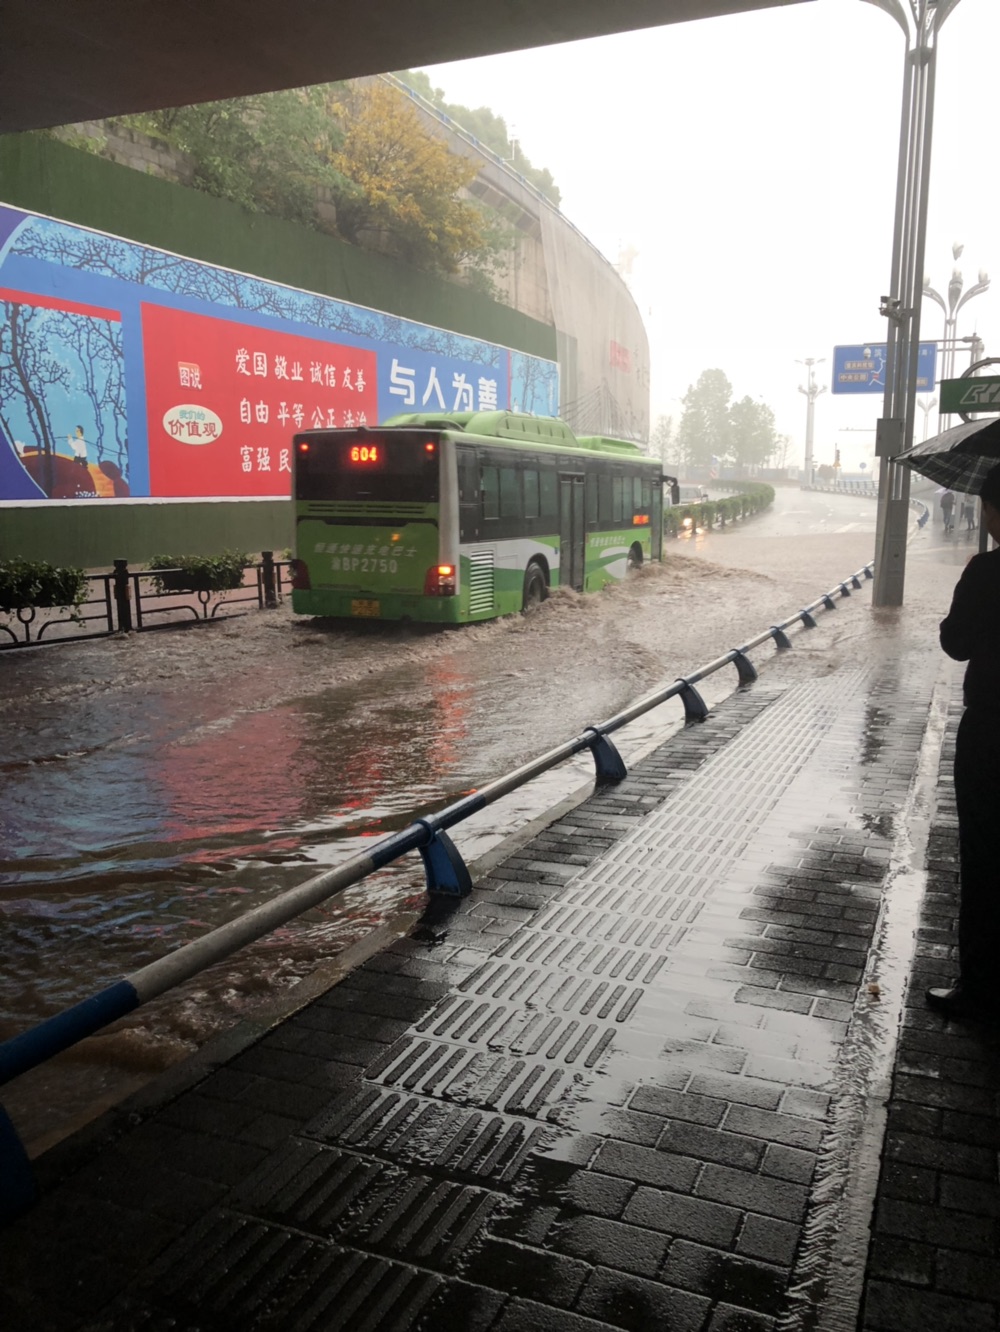 网友热心投稿:今天重庆大雨,大剧院的出口雨水暴涨